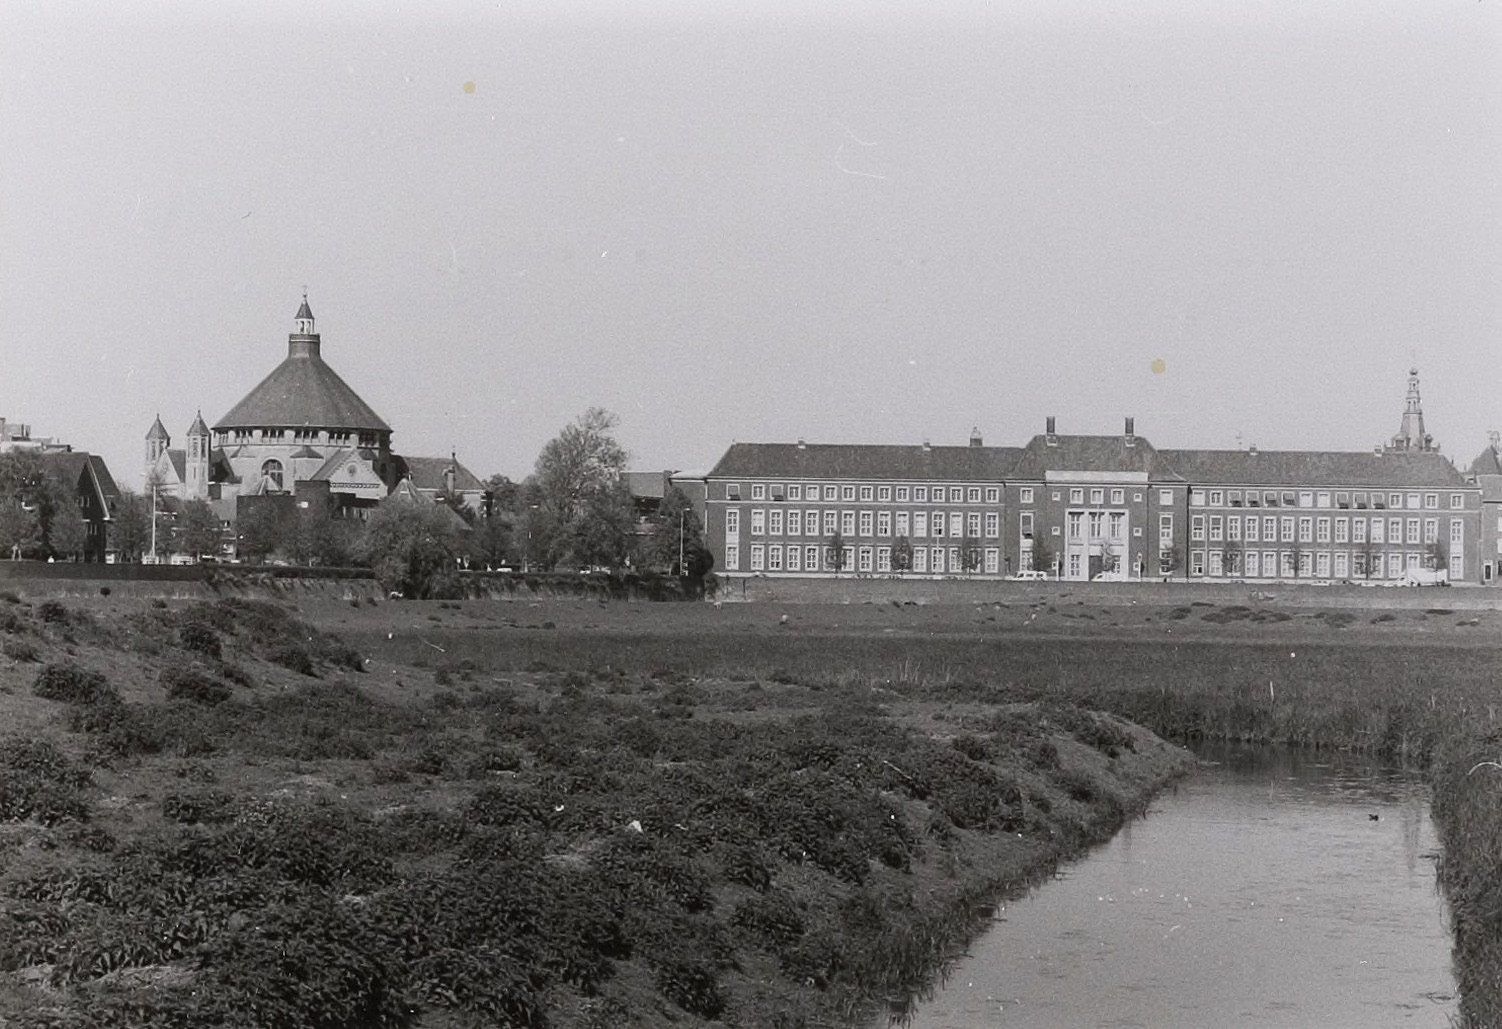 Het voormalige Paleis van Justitie in Den Bosch in 1990 (Foto: Wies van Leeuwen / provincie Noord-Brabant. BHIC, fotonummer PNB001034061)